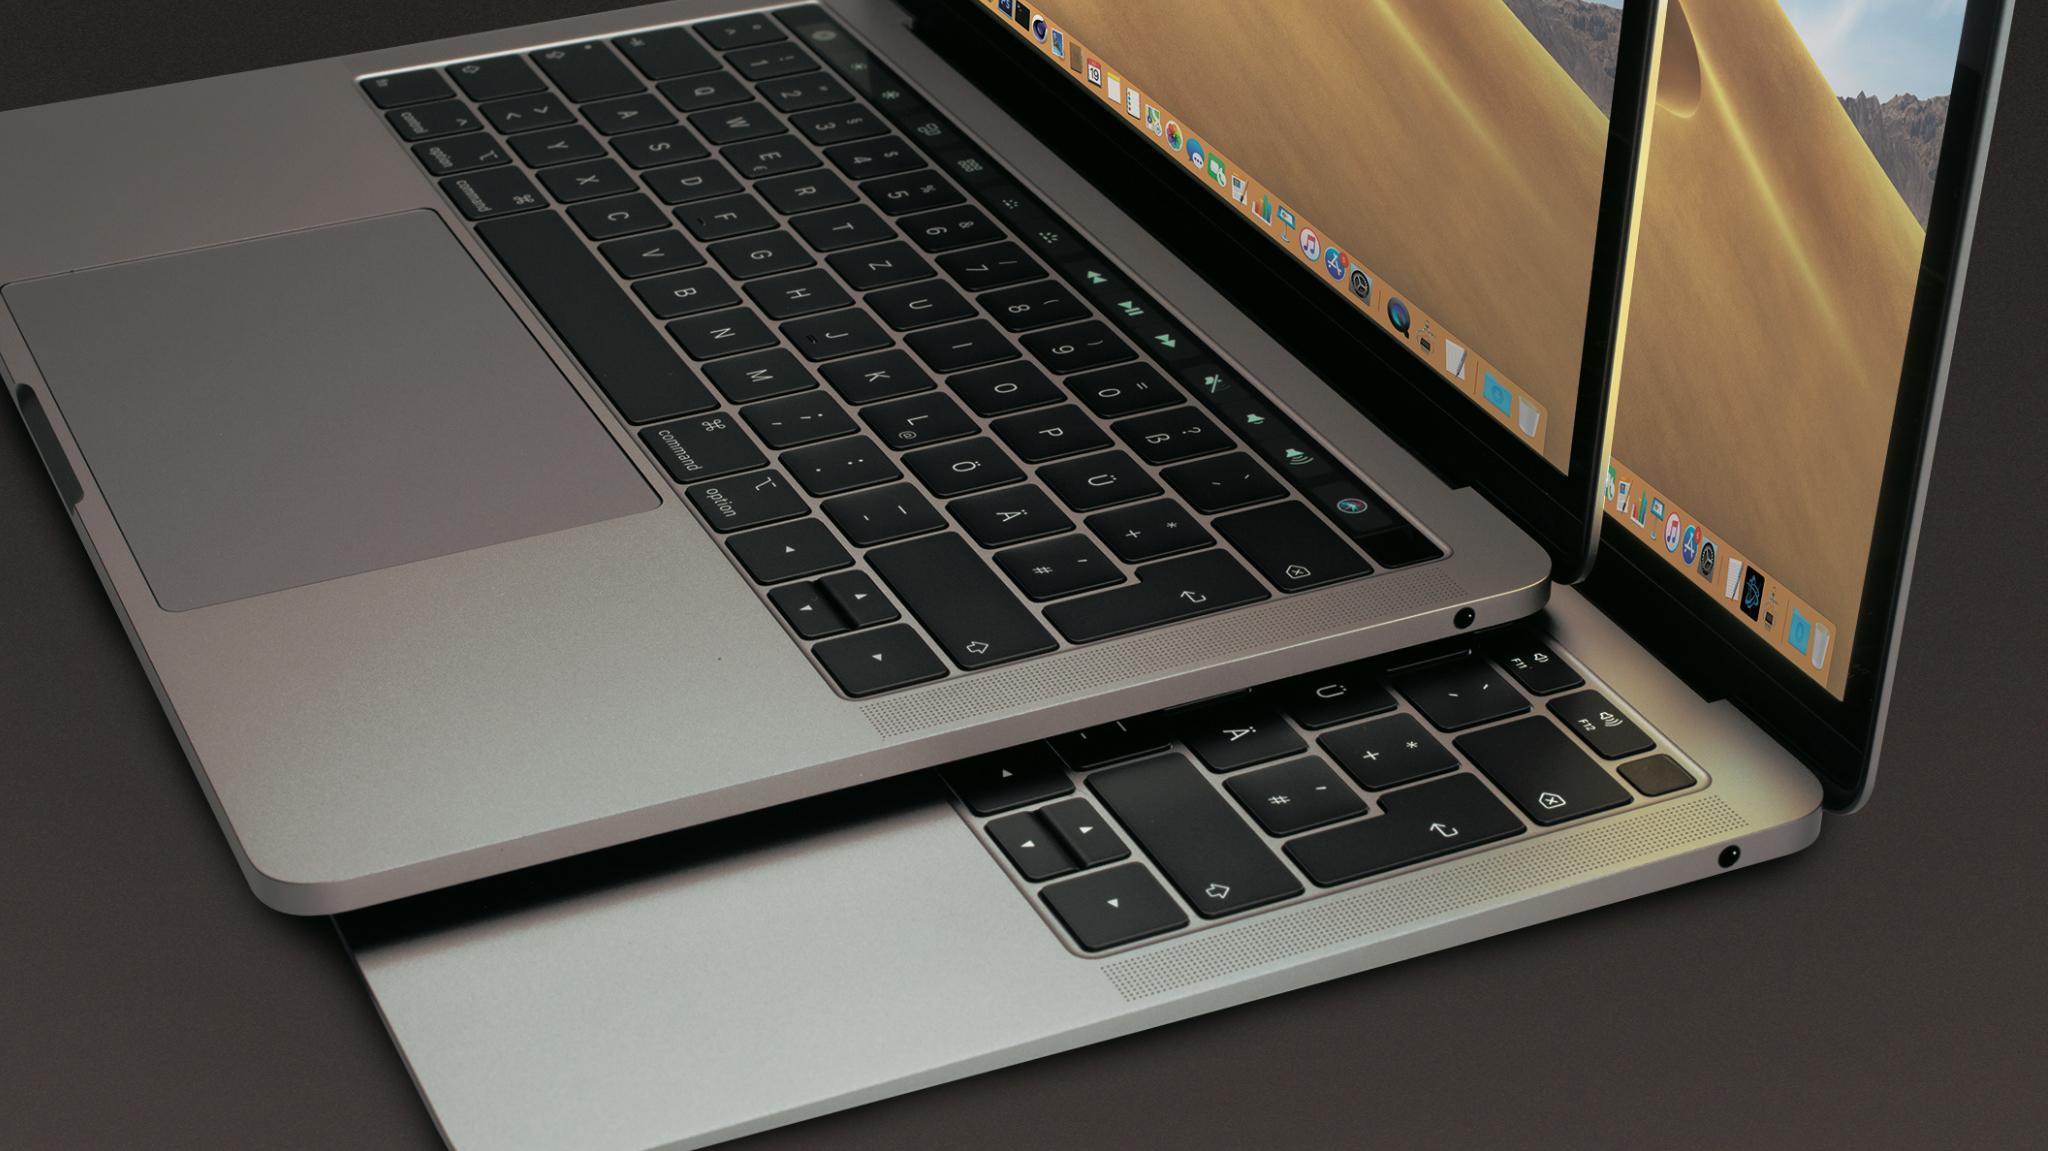 Neues 14 Zoll Macbook Pro Angeblich Im Mai Heise Online